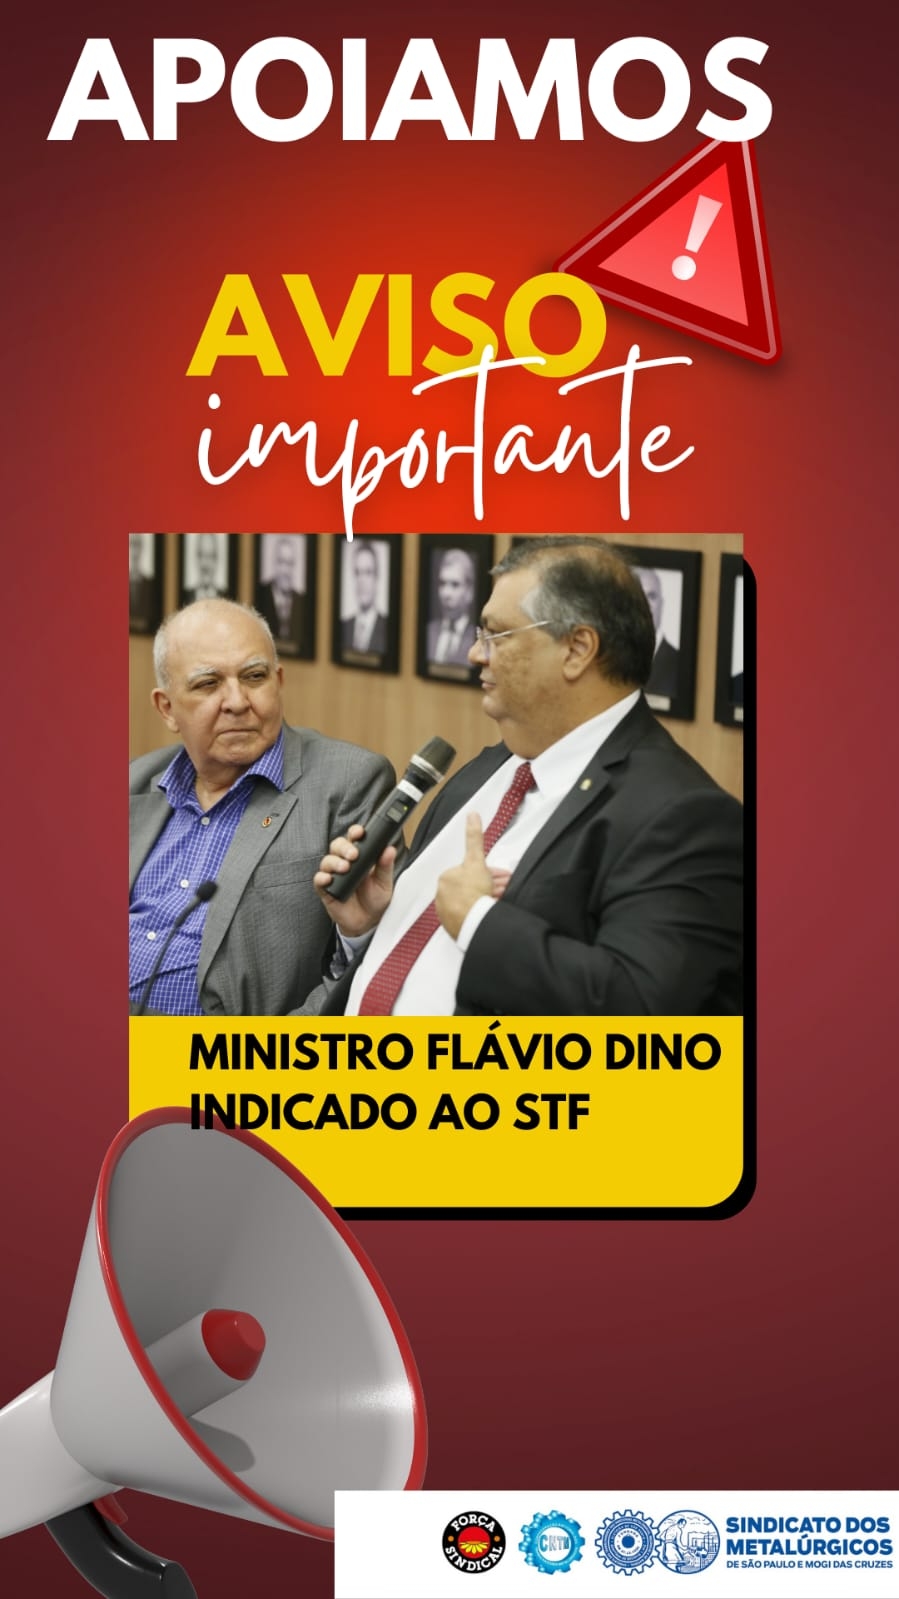 Apoio à indicação do Ministro Flávio Dino ao STF